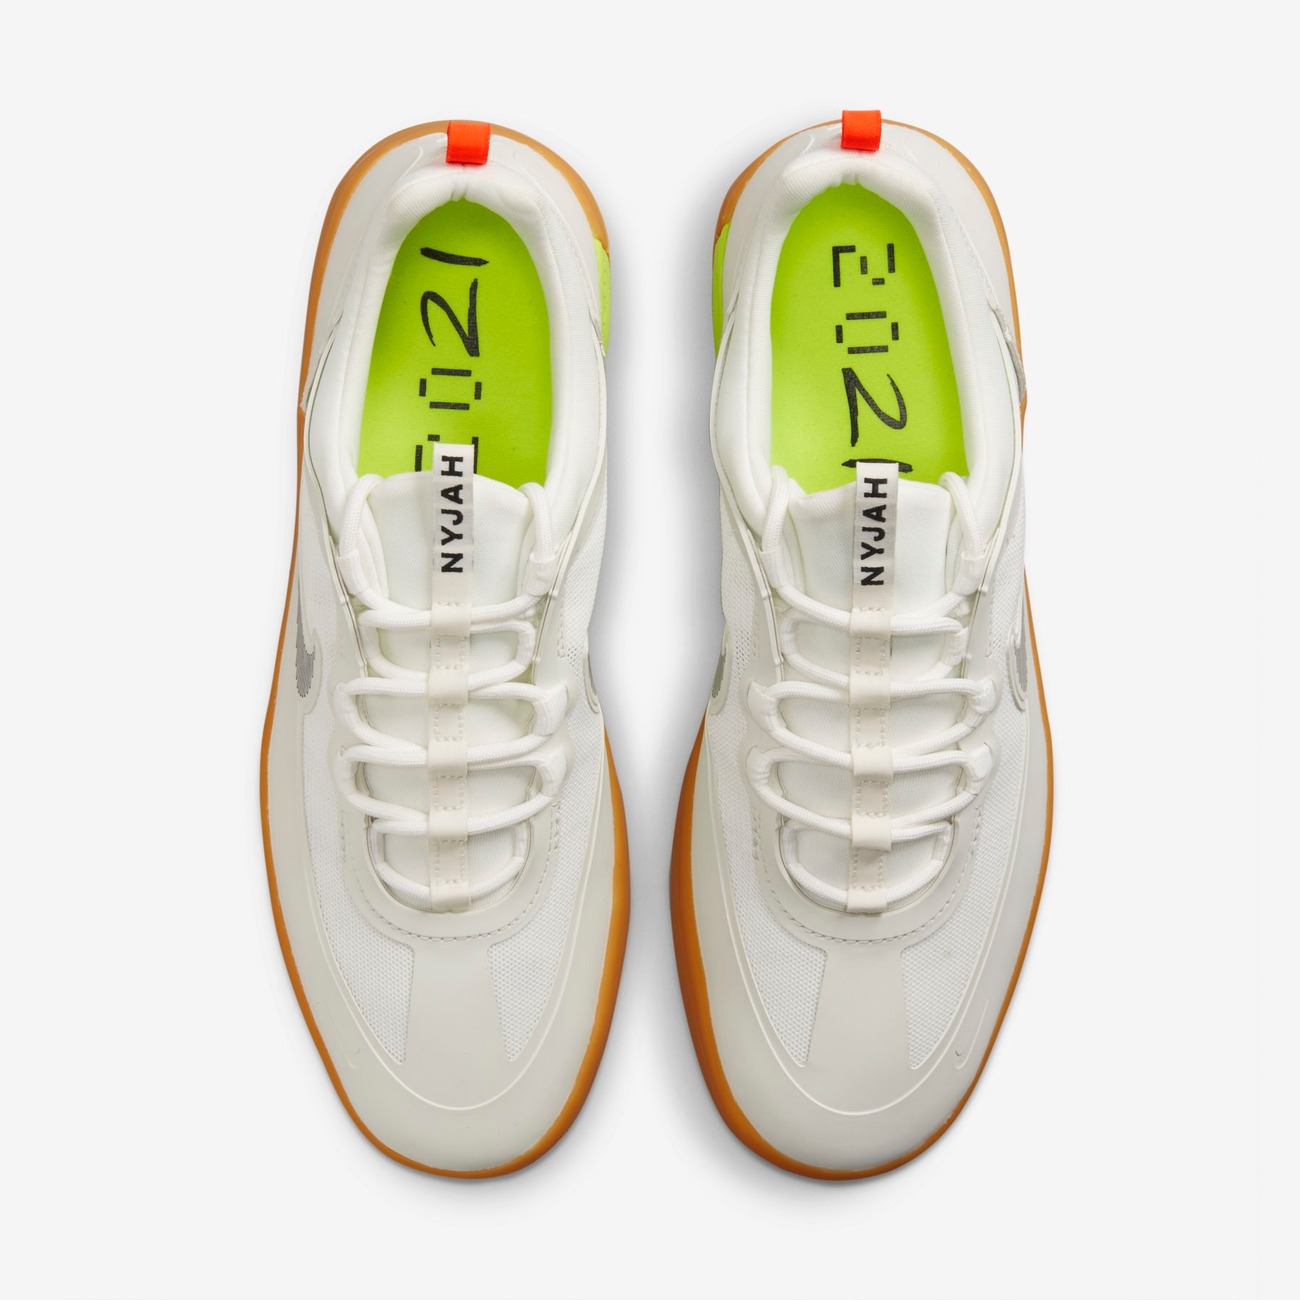 Tênis Nike SB Nyjah Free 2 Unissex - Foto 4